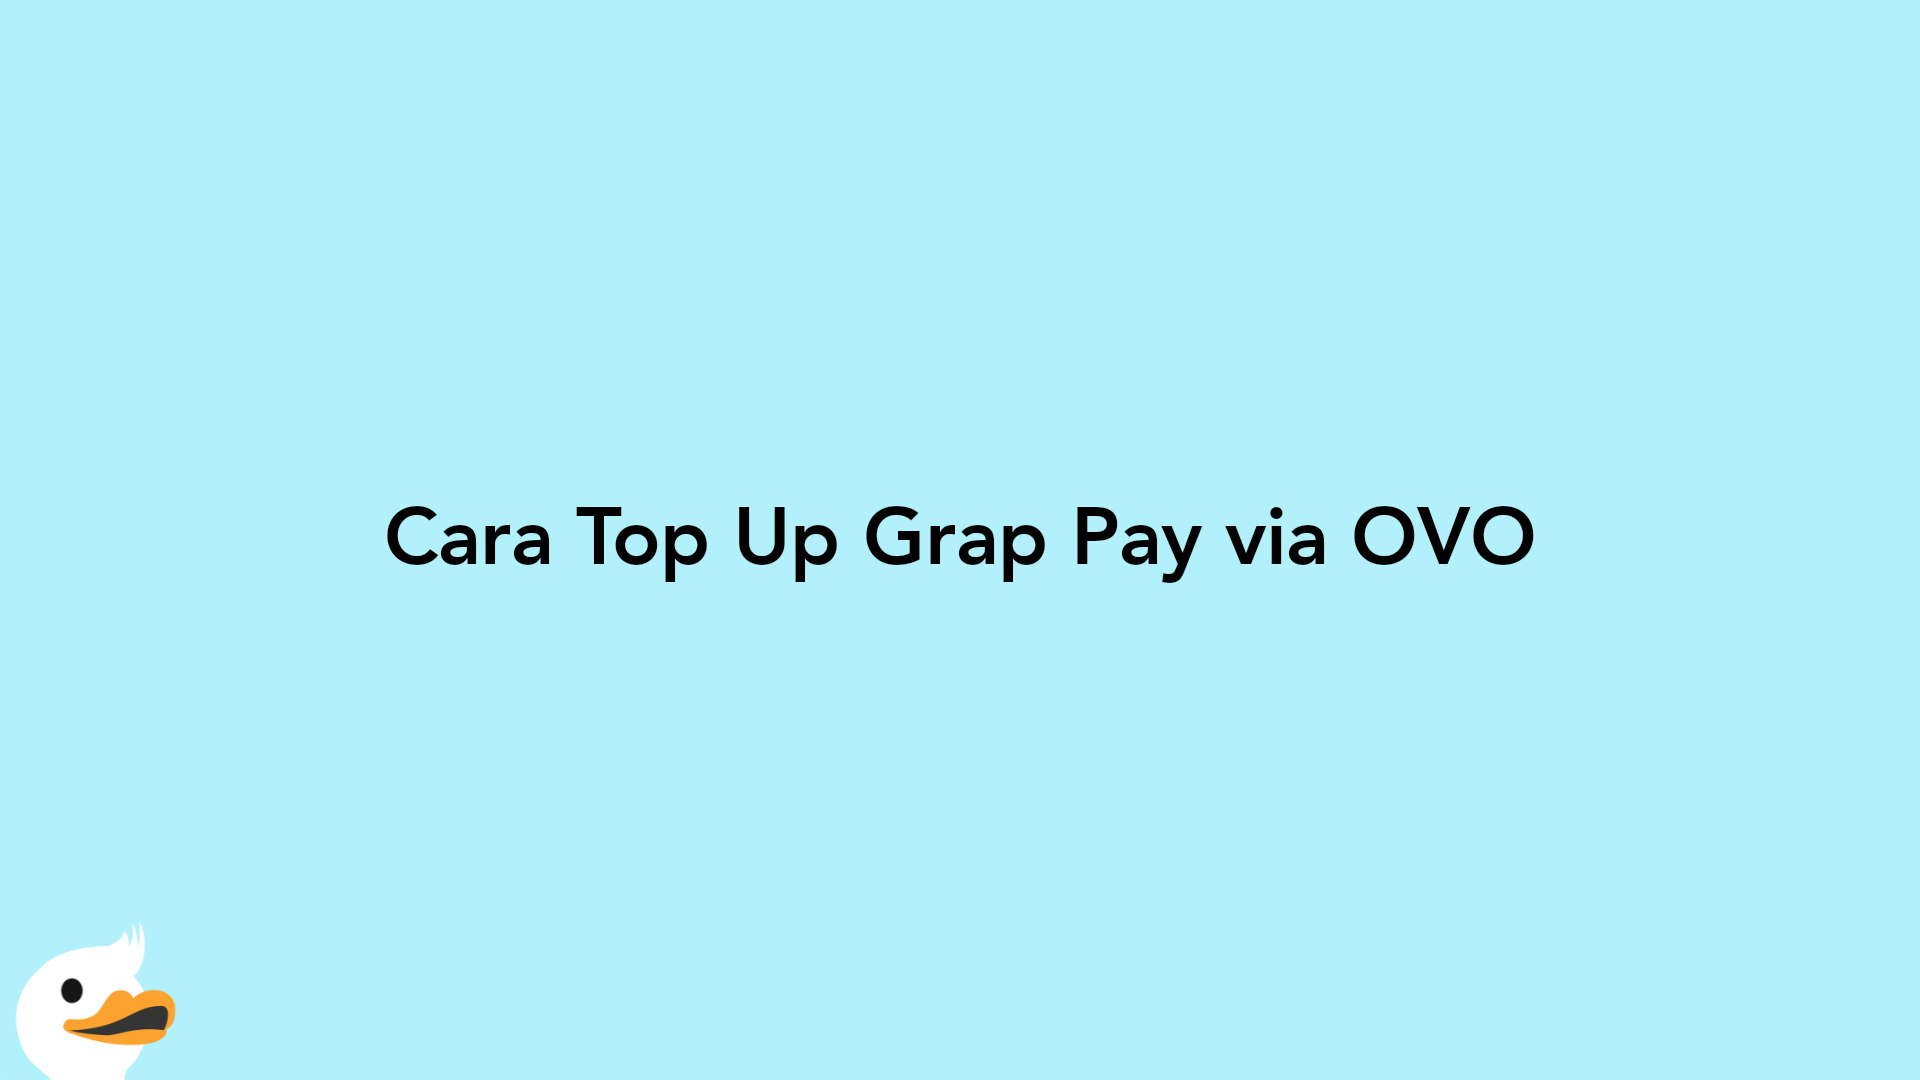 Cara Top Up Grap Pay via OVO